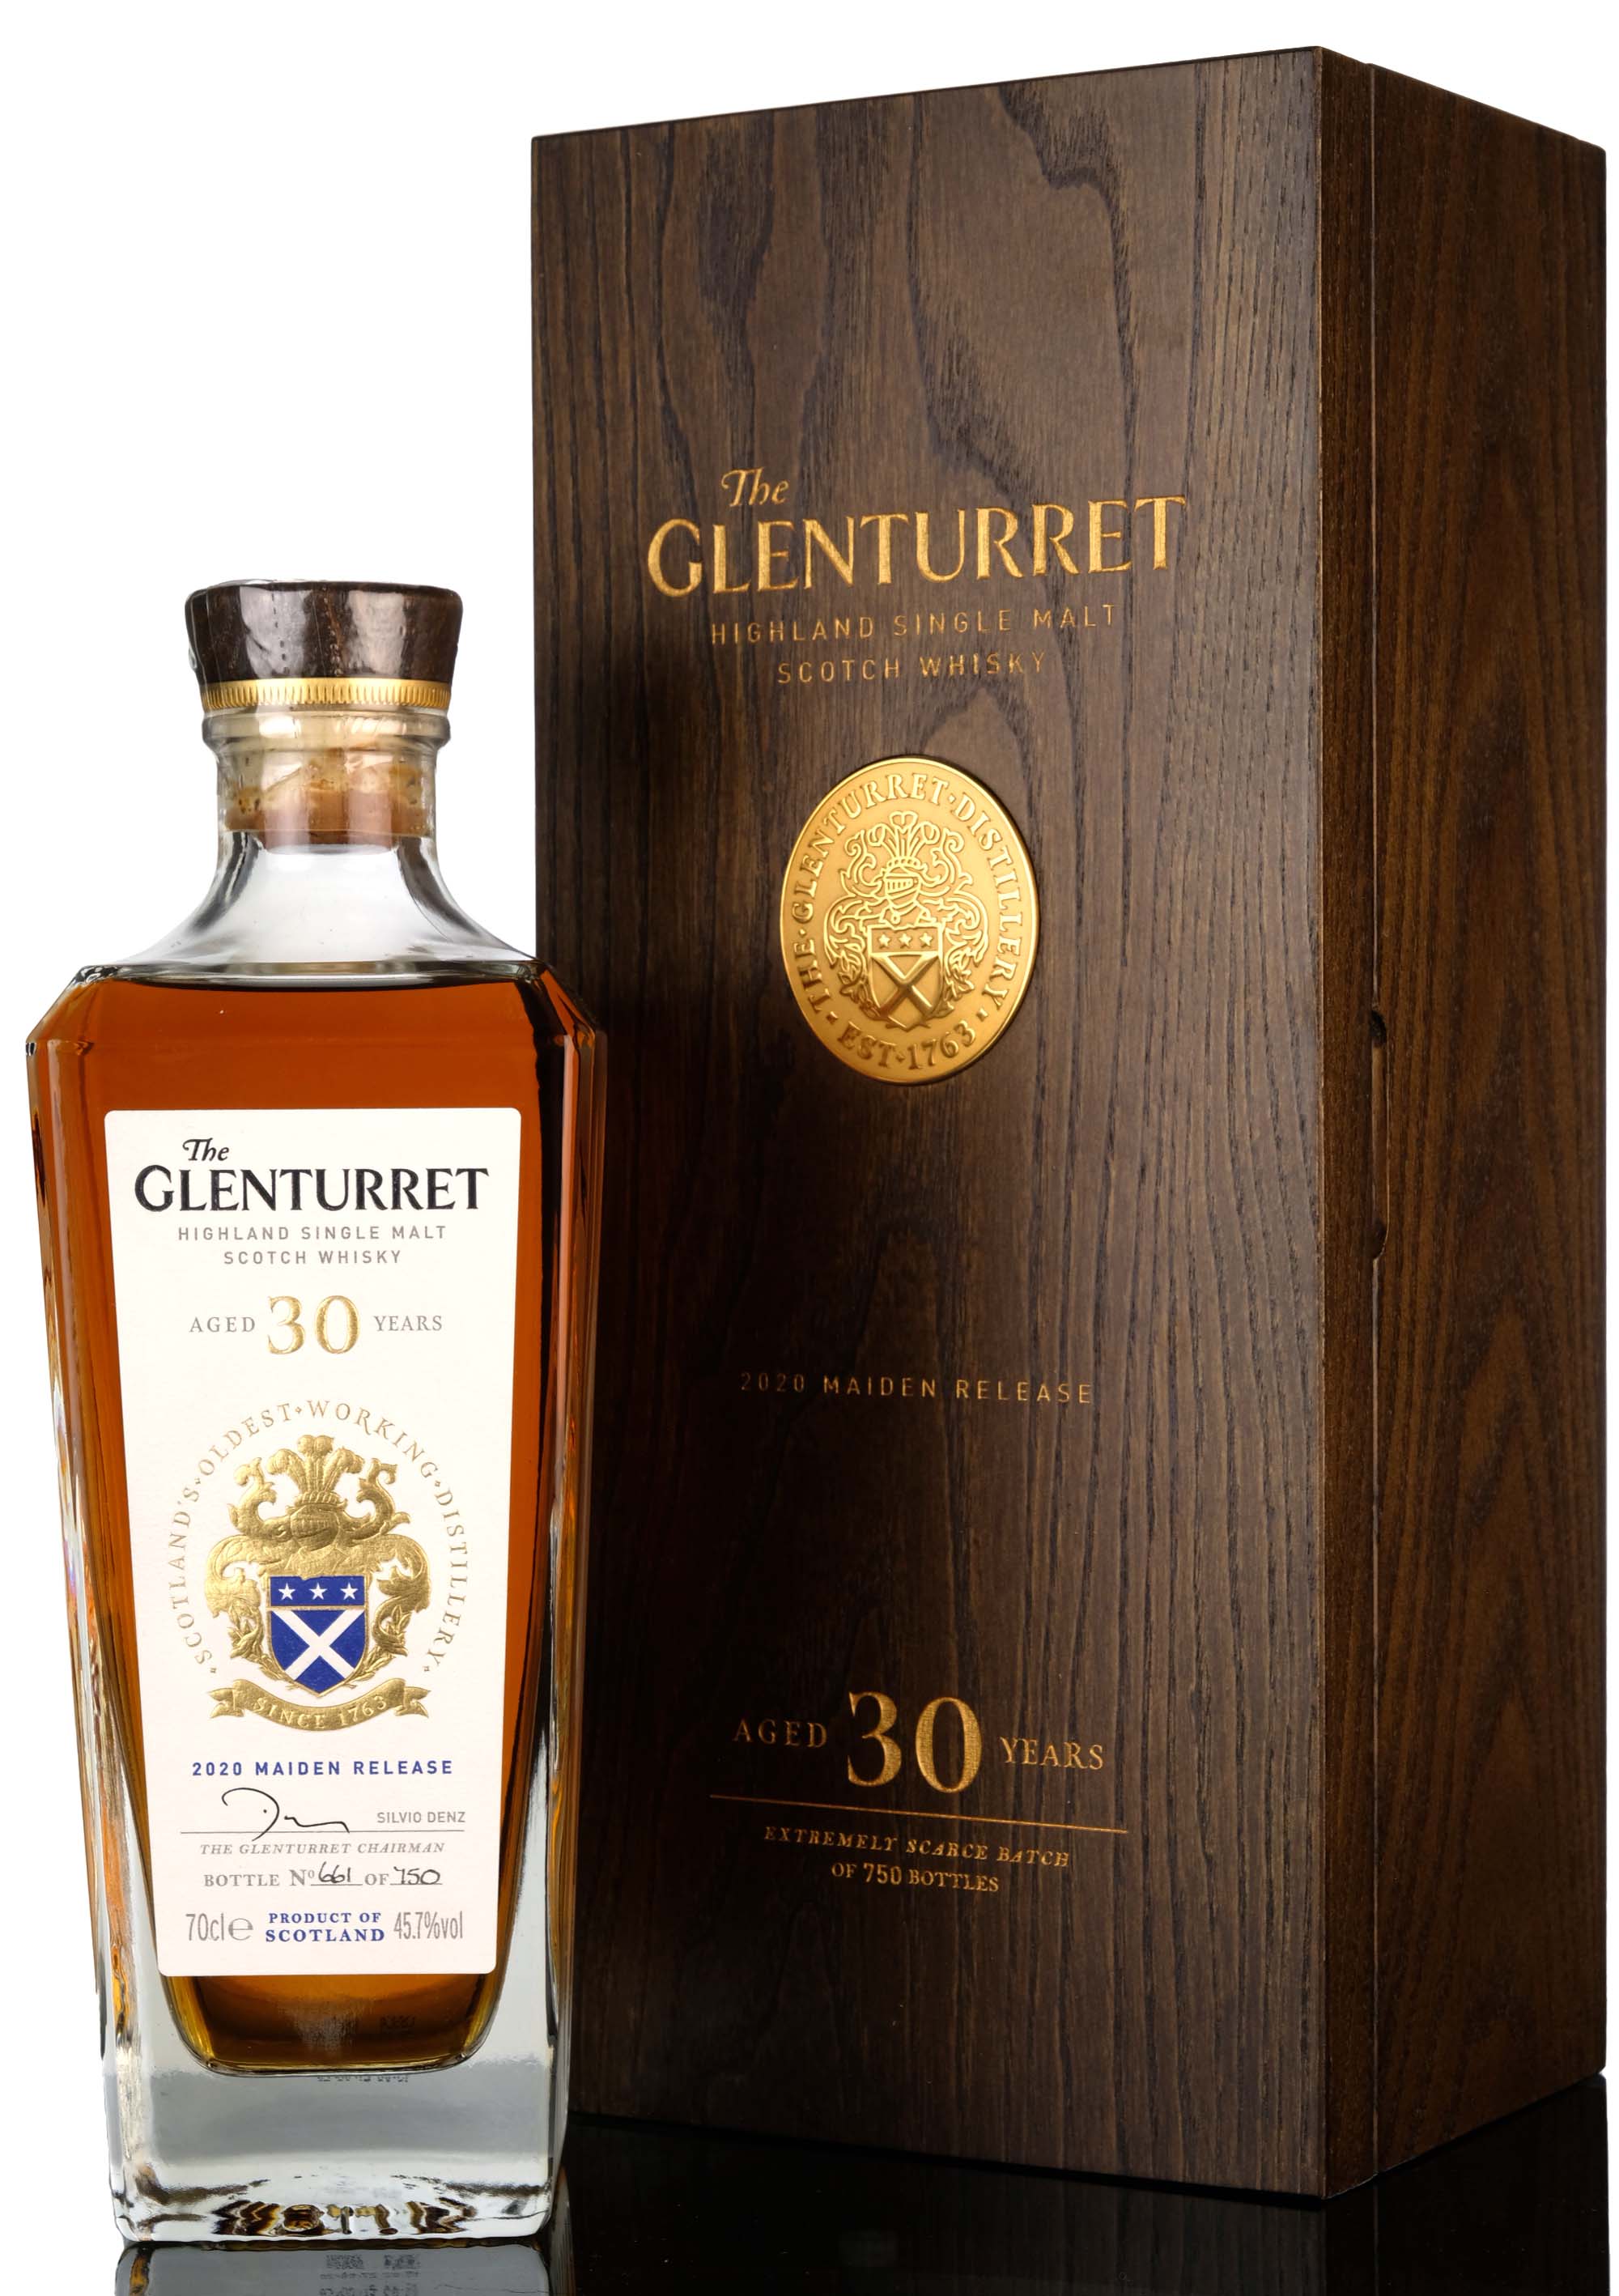 Glenturret 30 Year Old - 2020 Maiden Release